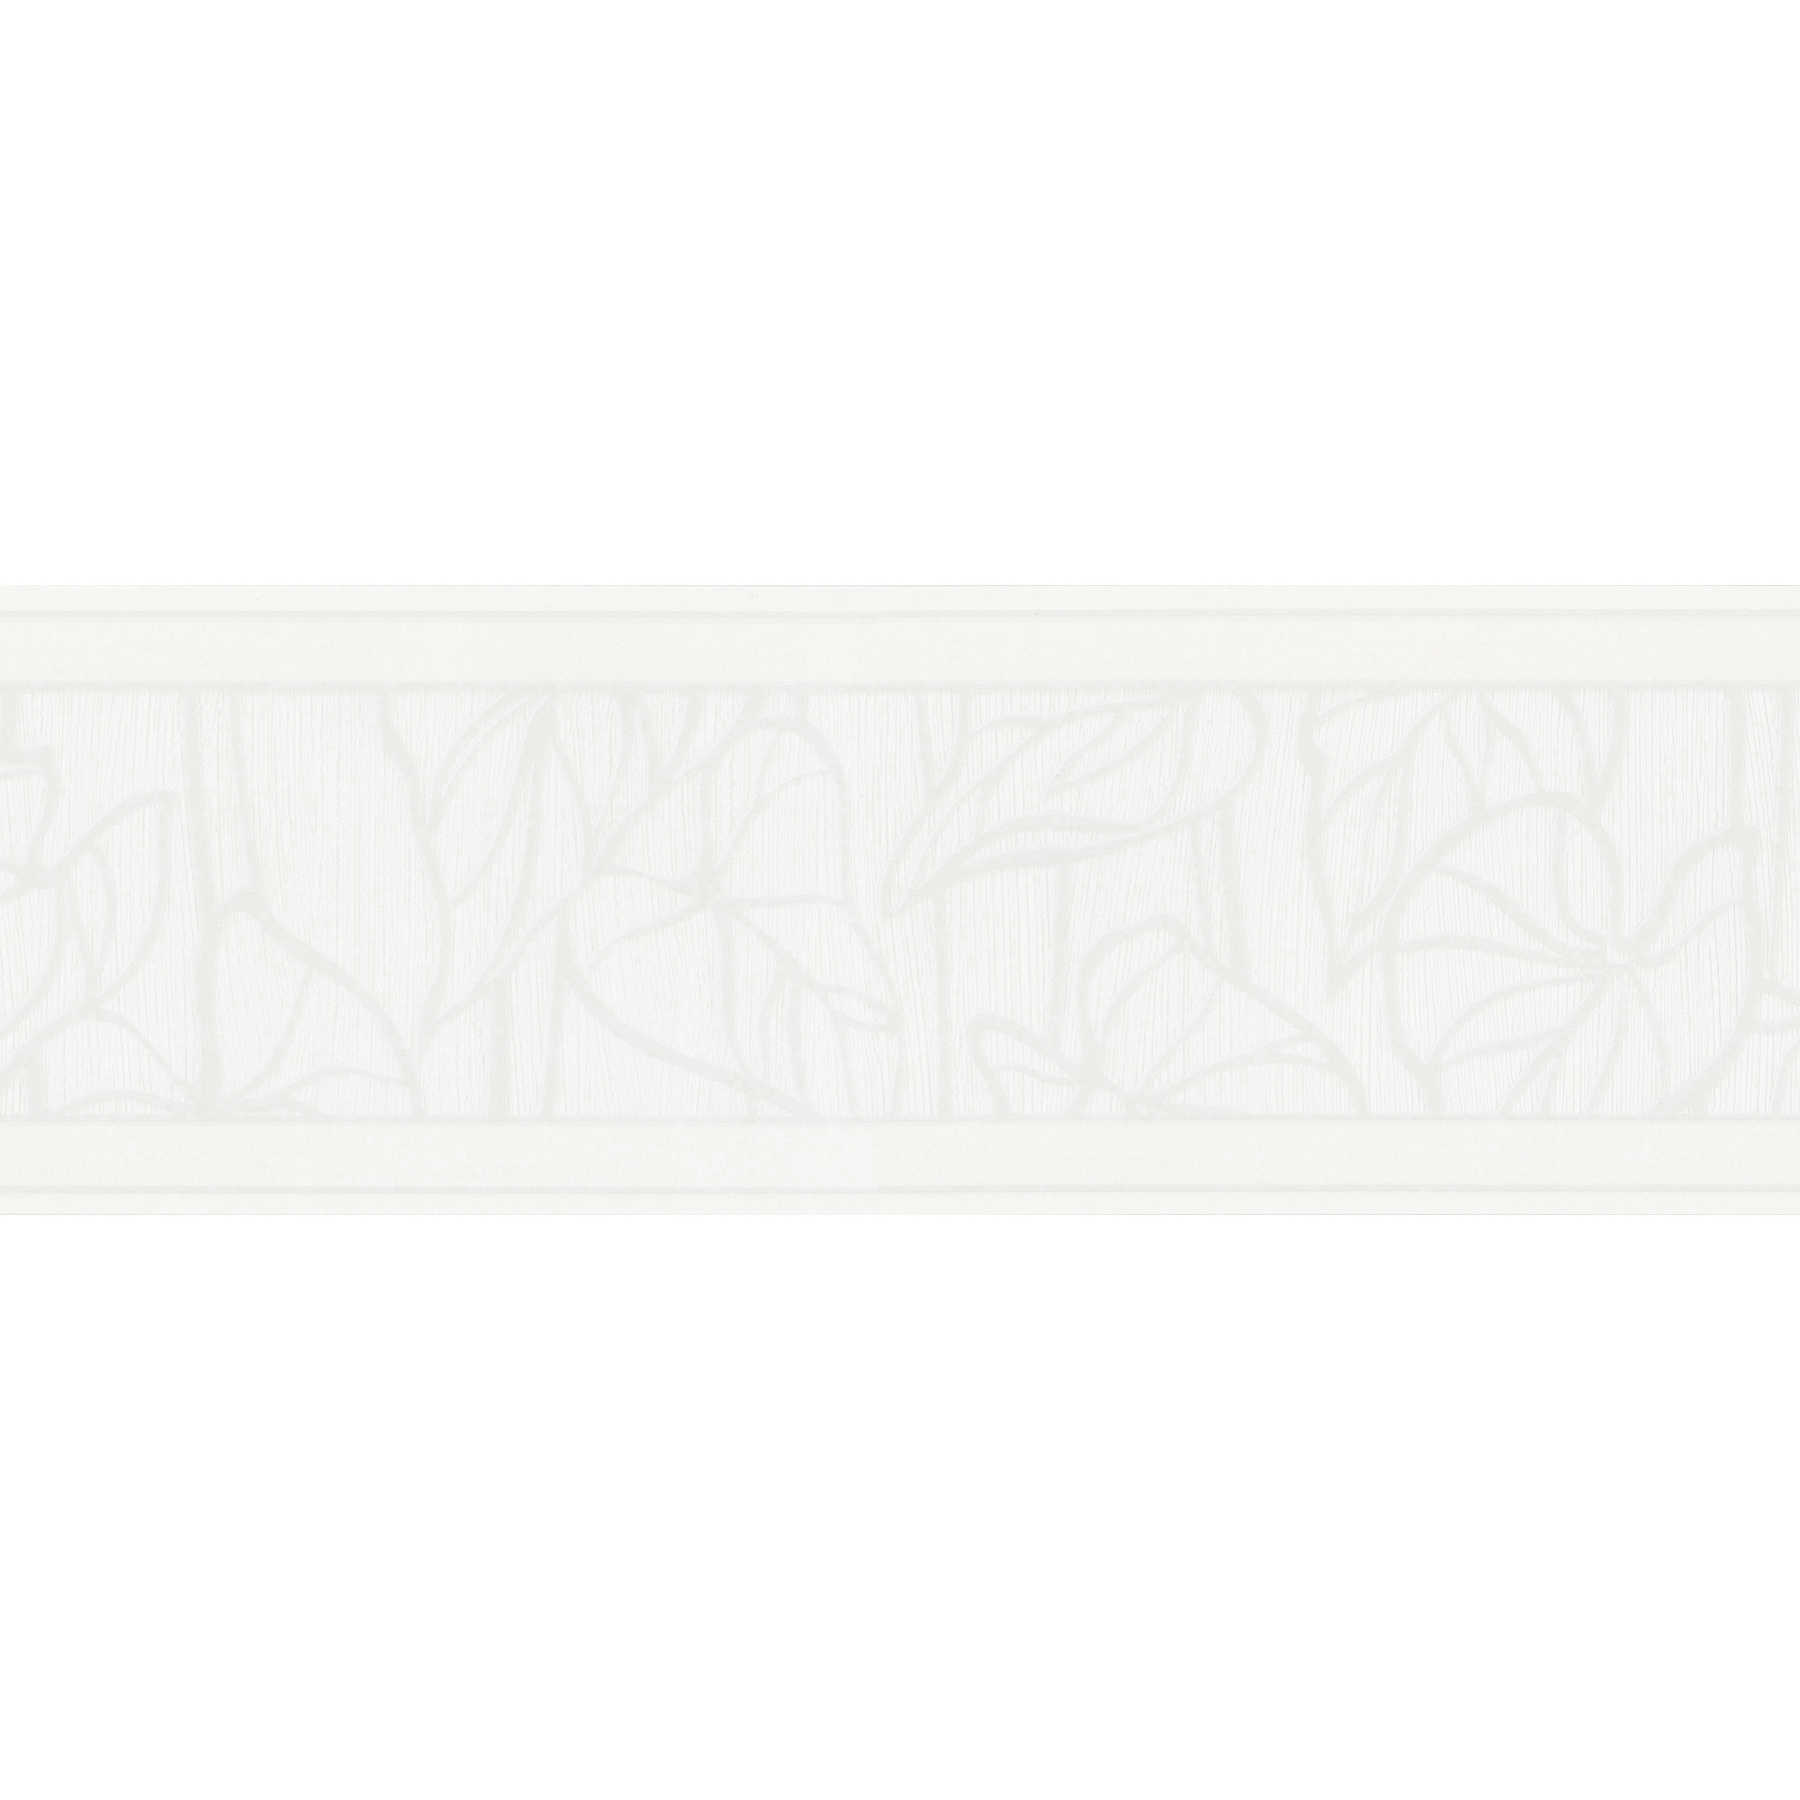         Cremeweiße Borte mit Blättermotiv und Strukturmuster – Weiß
    